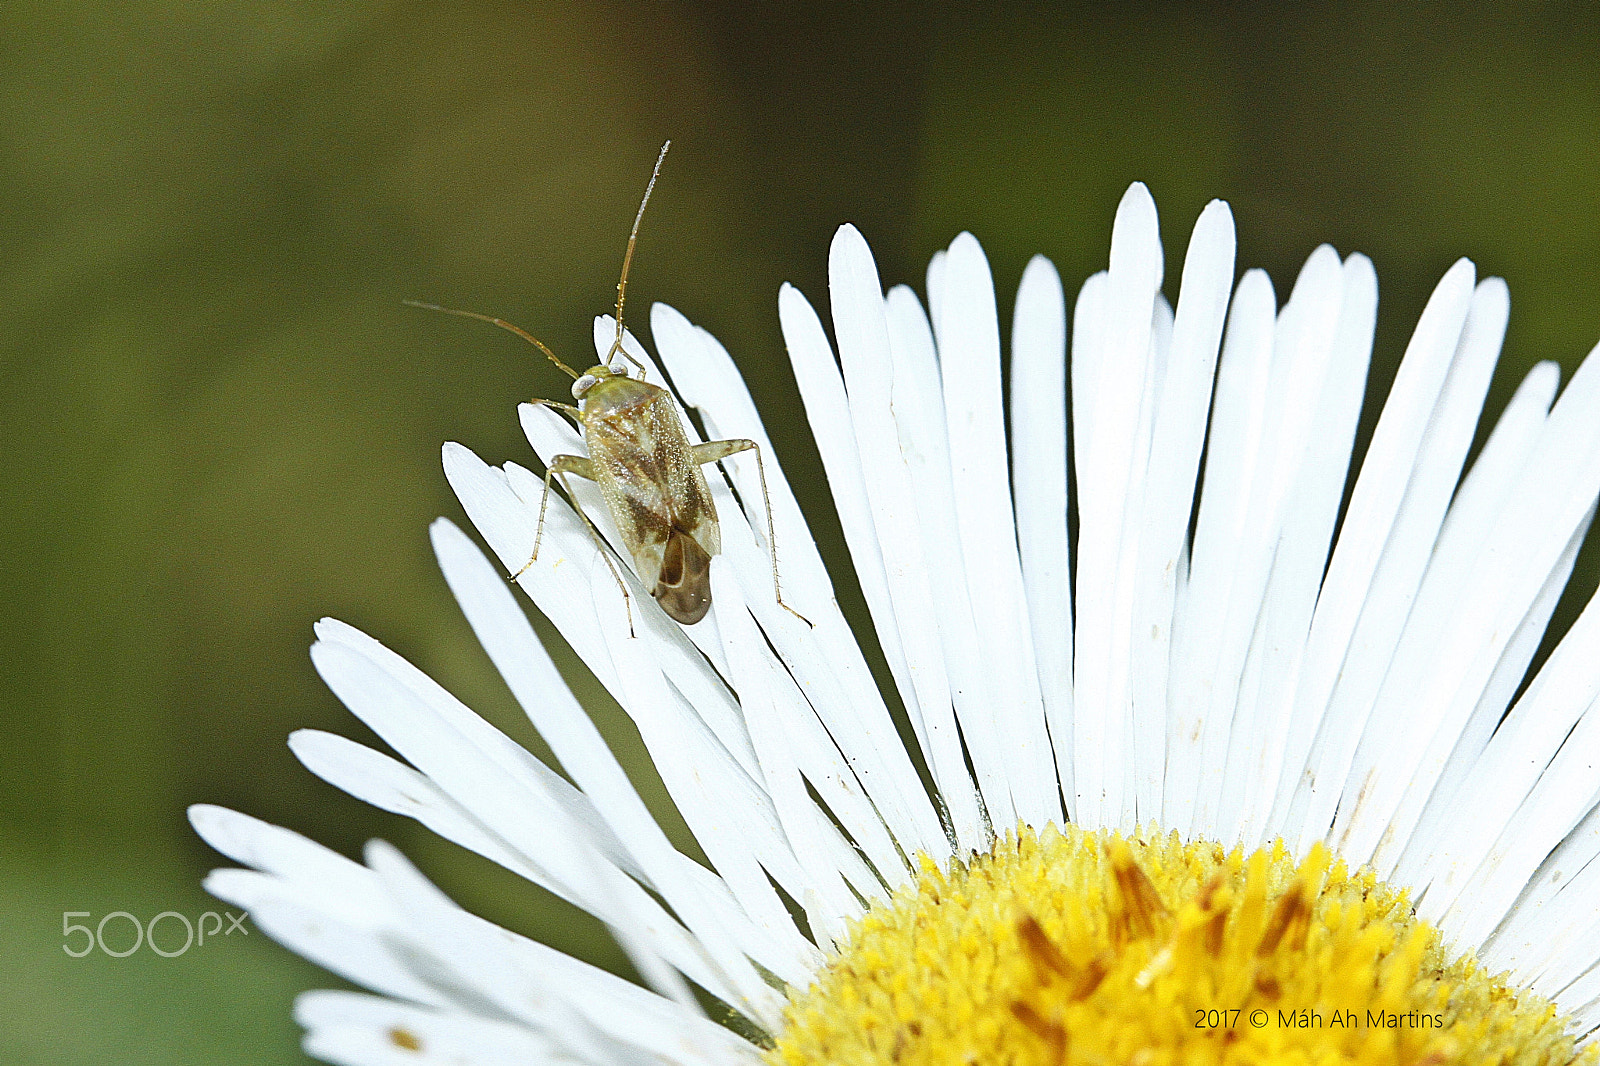 Canon EOS 500D (EOS Rebel T1i / EOS Kiss X3) sample photo. Hemiptera, miridae - percevejo do campo.. photography